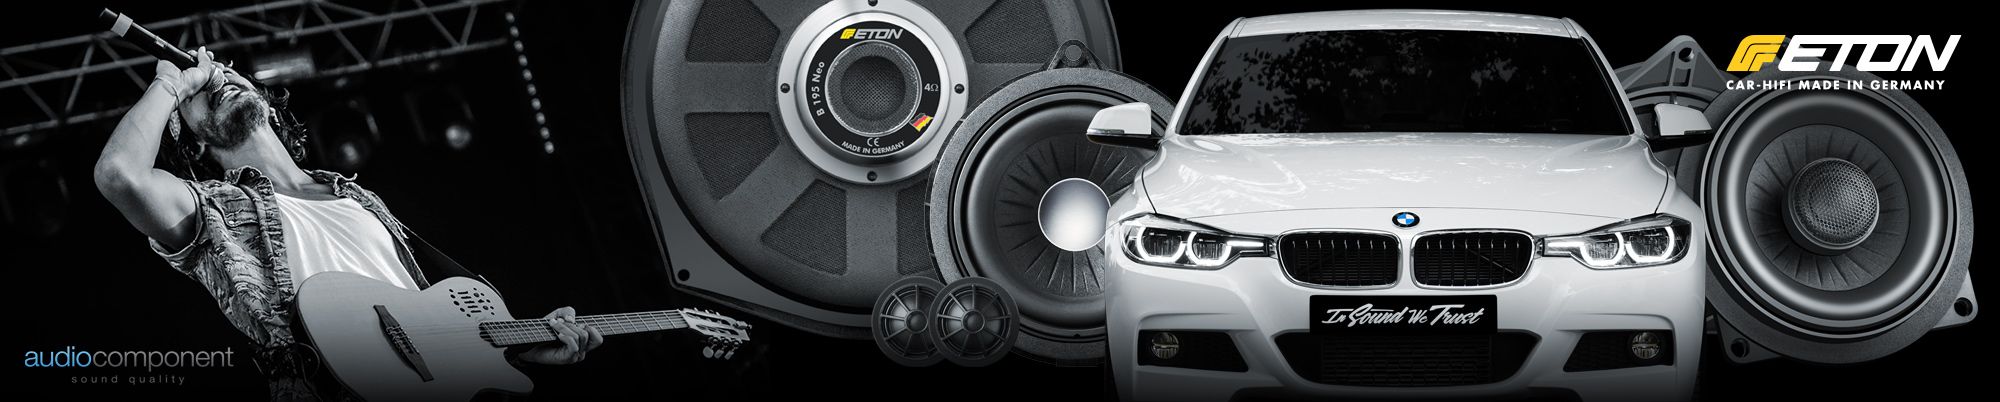 Sistemas de sonido de alta fidelidad para BMW ETON _ Made in Germany